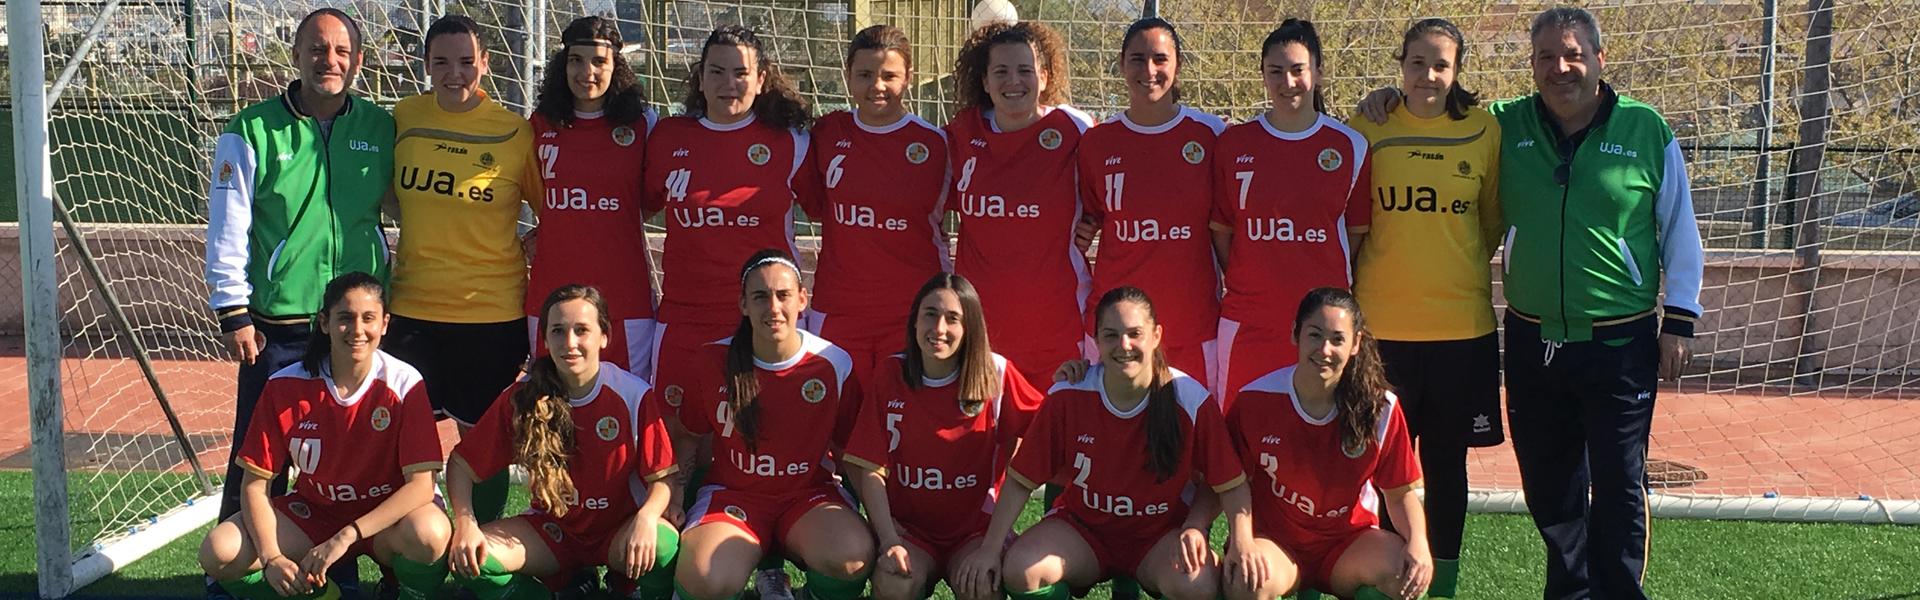 Campeonato de Andalucía Universitario de Fútbol 7 femenino